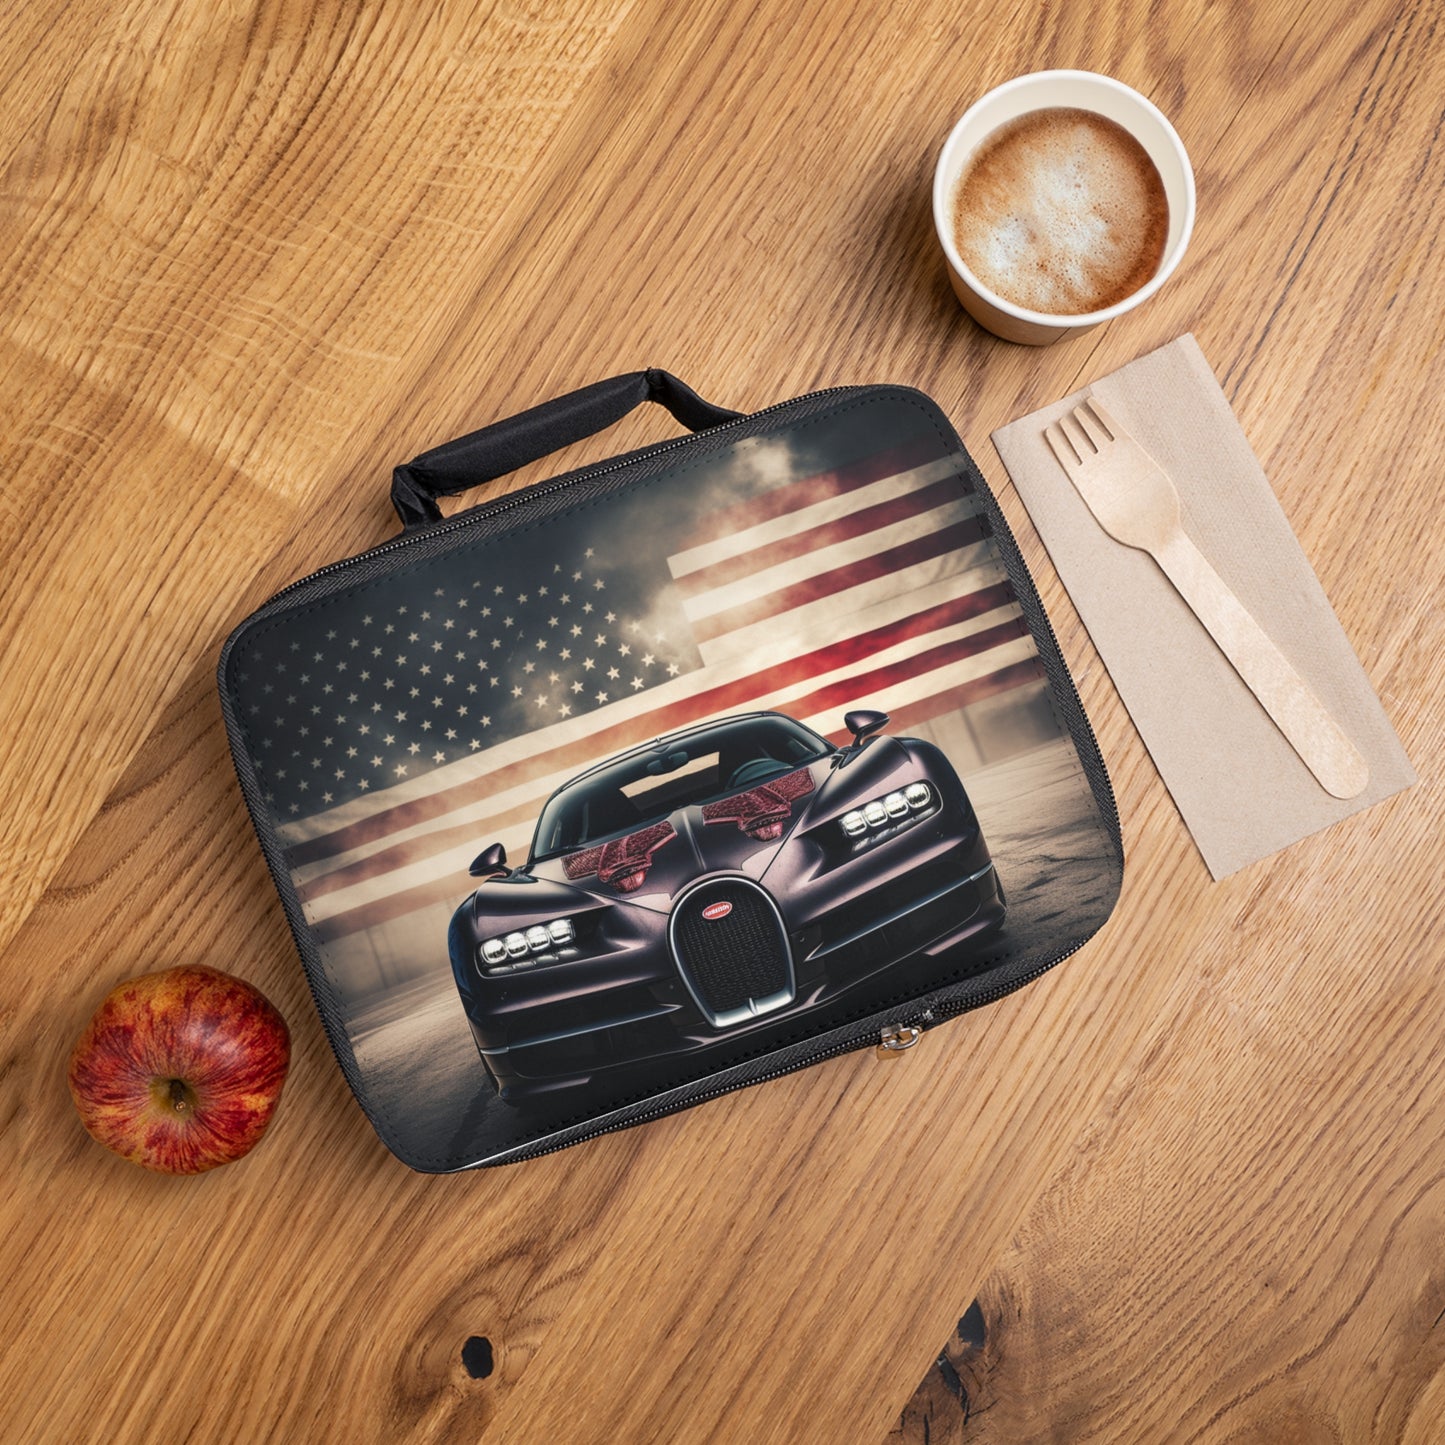 Lunch Bag American Flag Background Bugatti 2